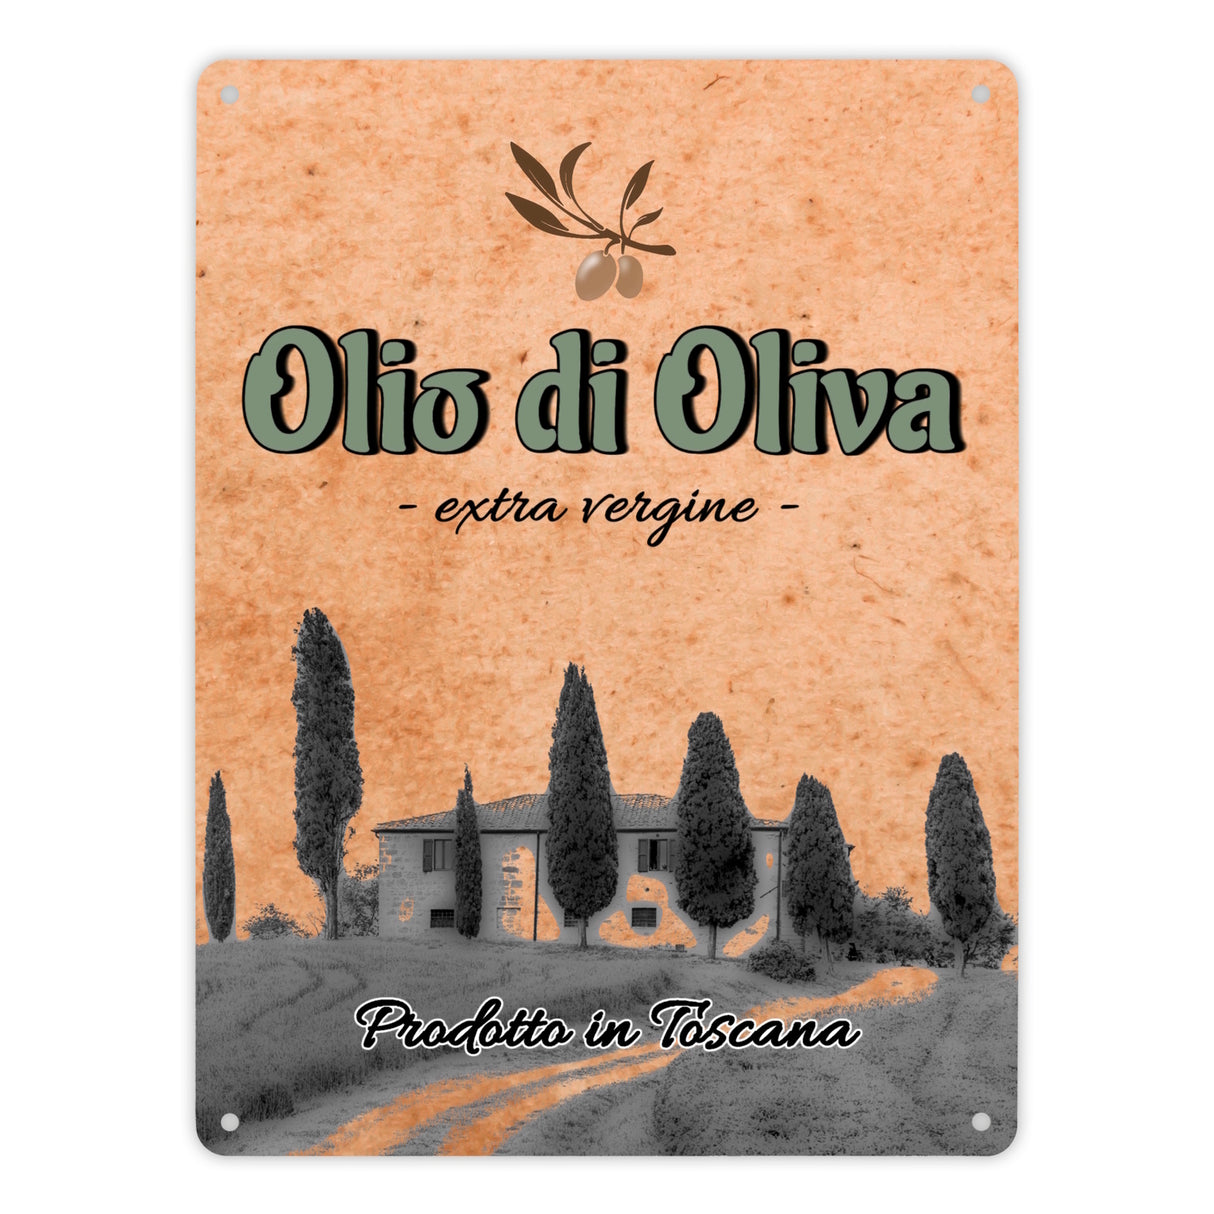 Metallschild in 15x20 cm mit mediterranem Olivenölmotiv Olio di Oliva für die Küche